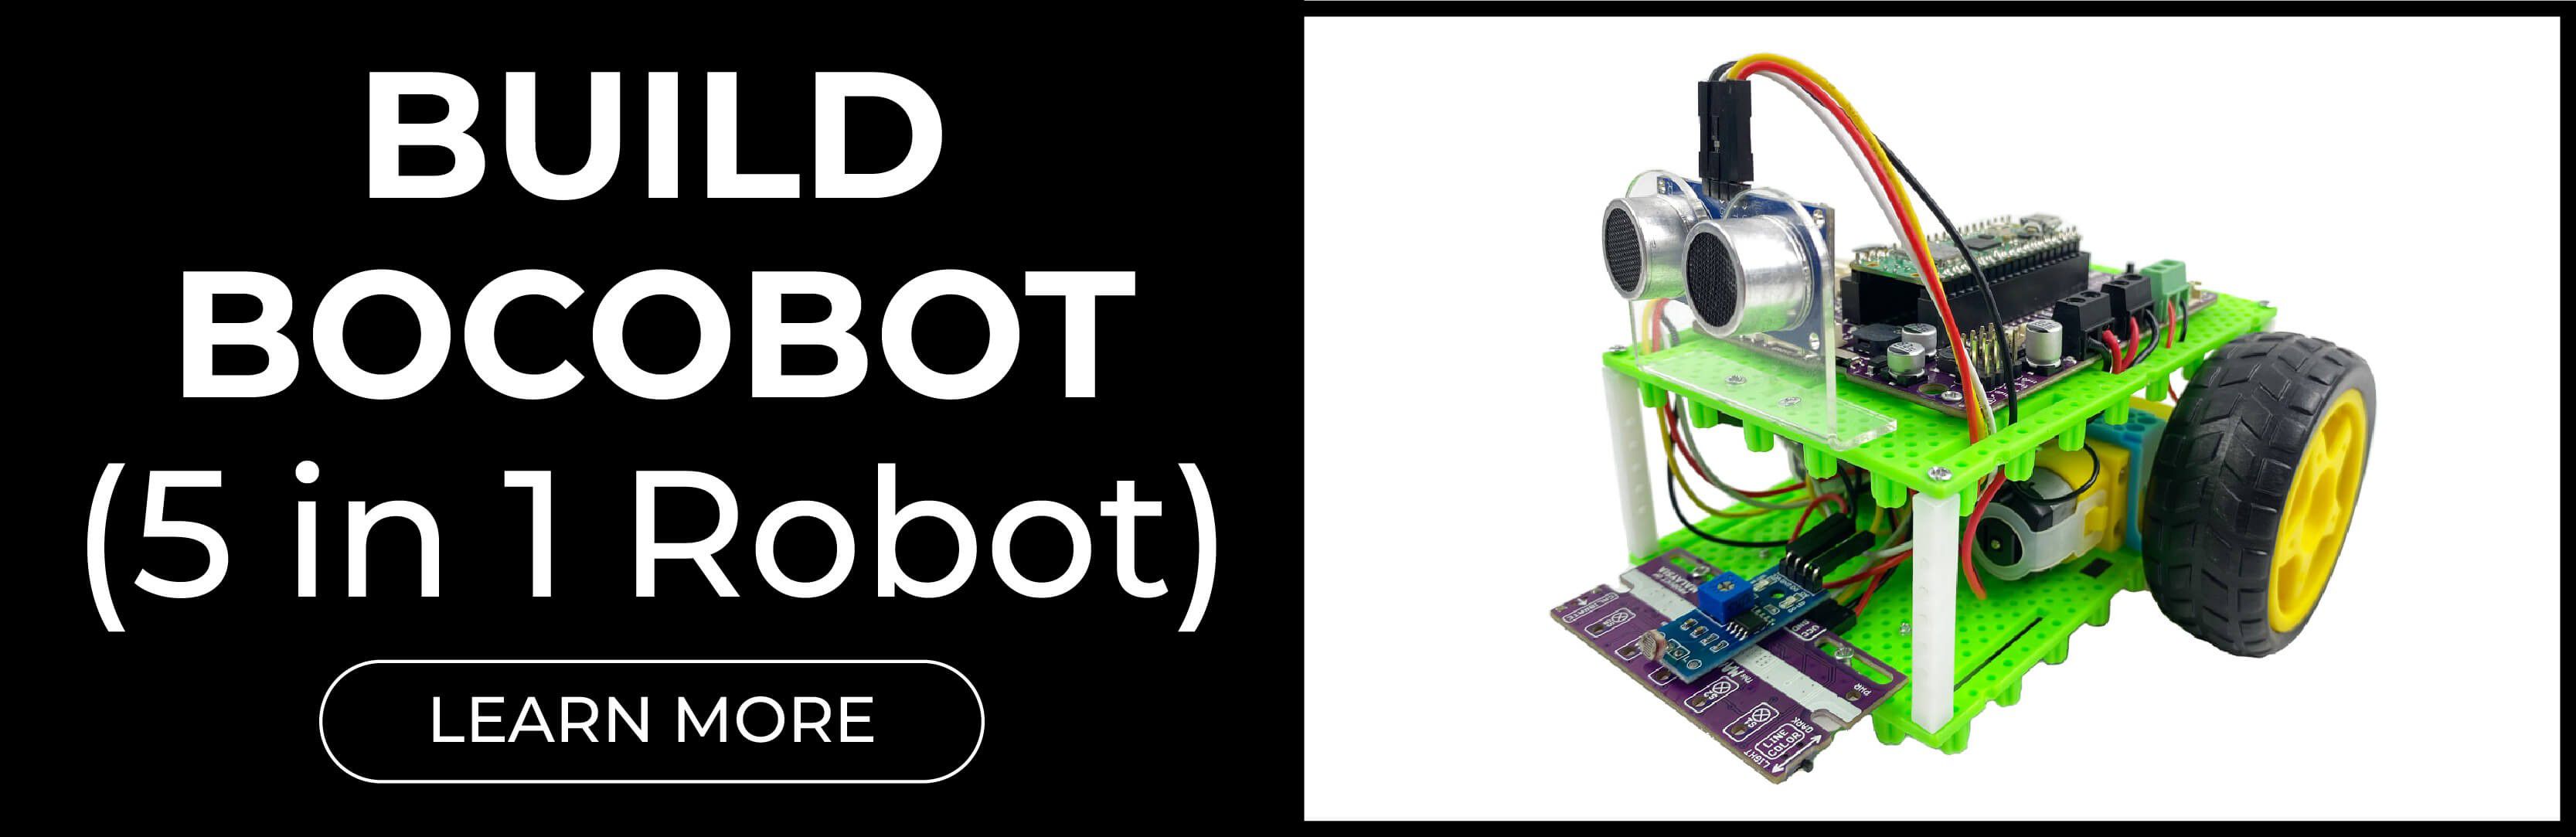 Arduino IoT Bundle RP2040 - RobotShop